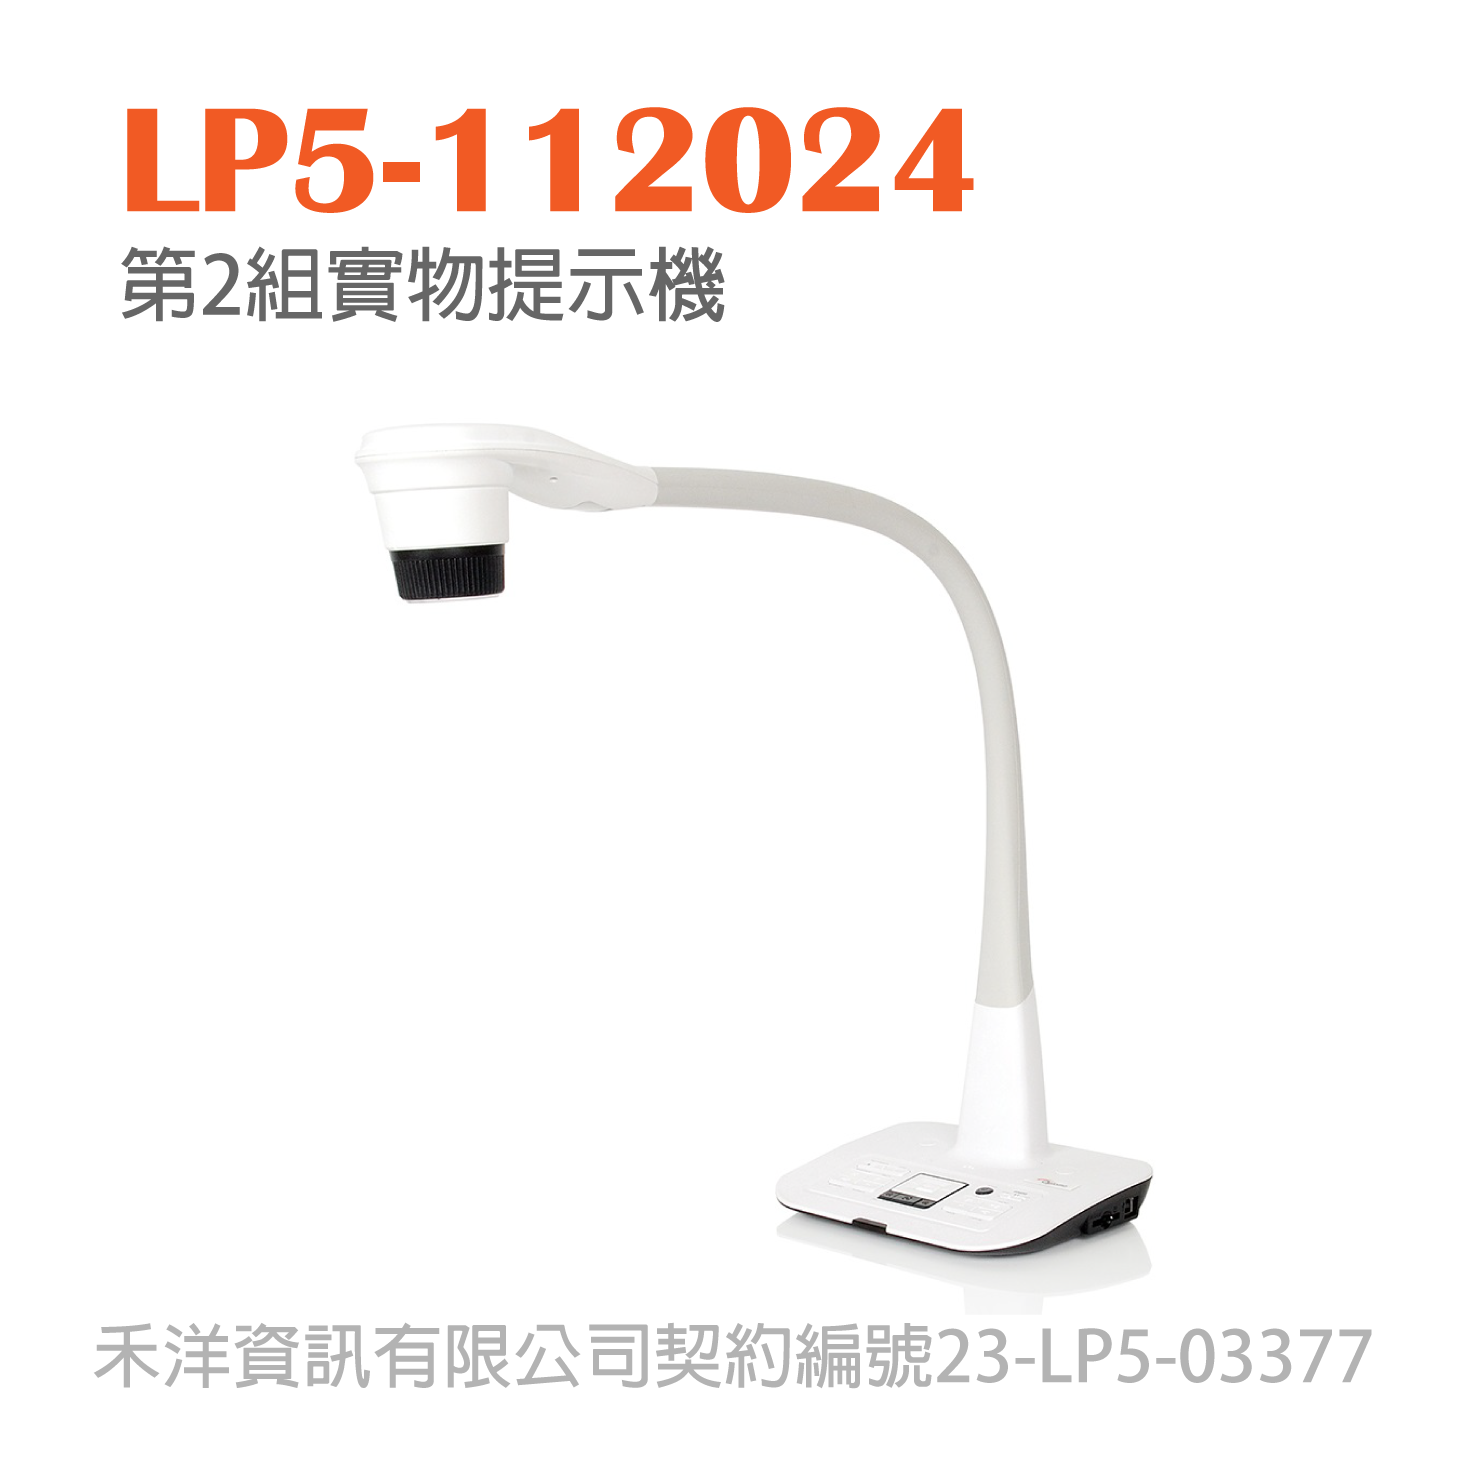 LP5-112024 台銀投影機標 第2組實物提示機